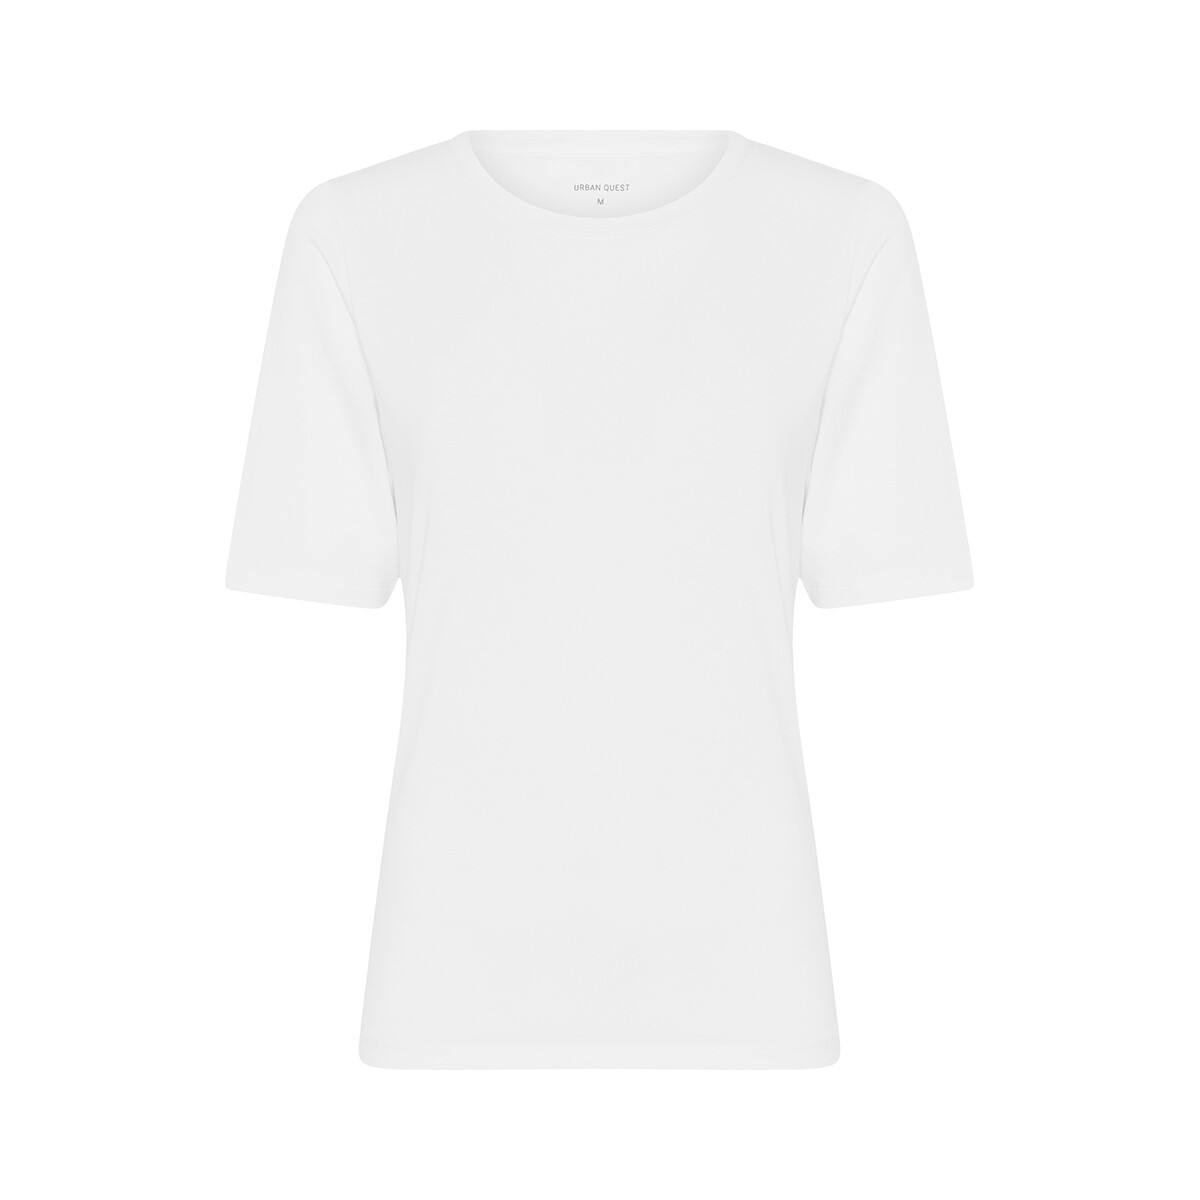 Urban Quest Bamboo Slim Fit T-shirt, Farbe: Weiß, Größe: S, Damen von Urban Quest